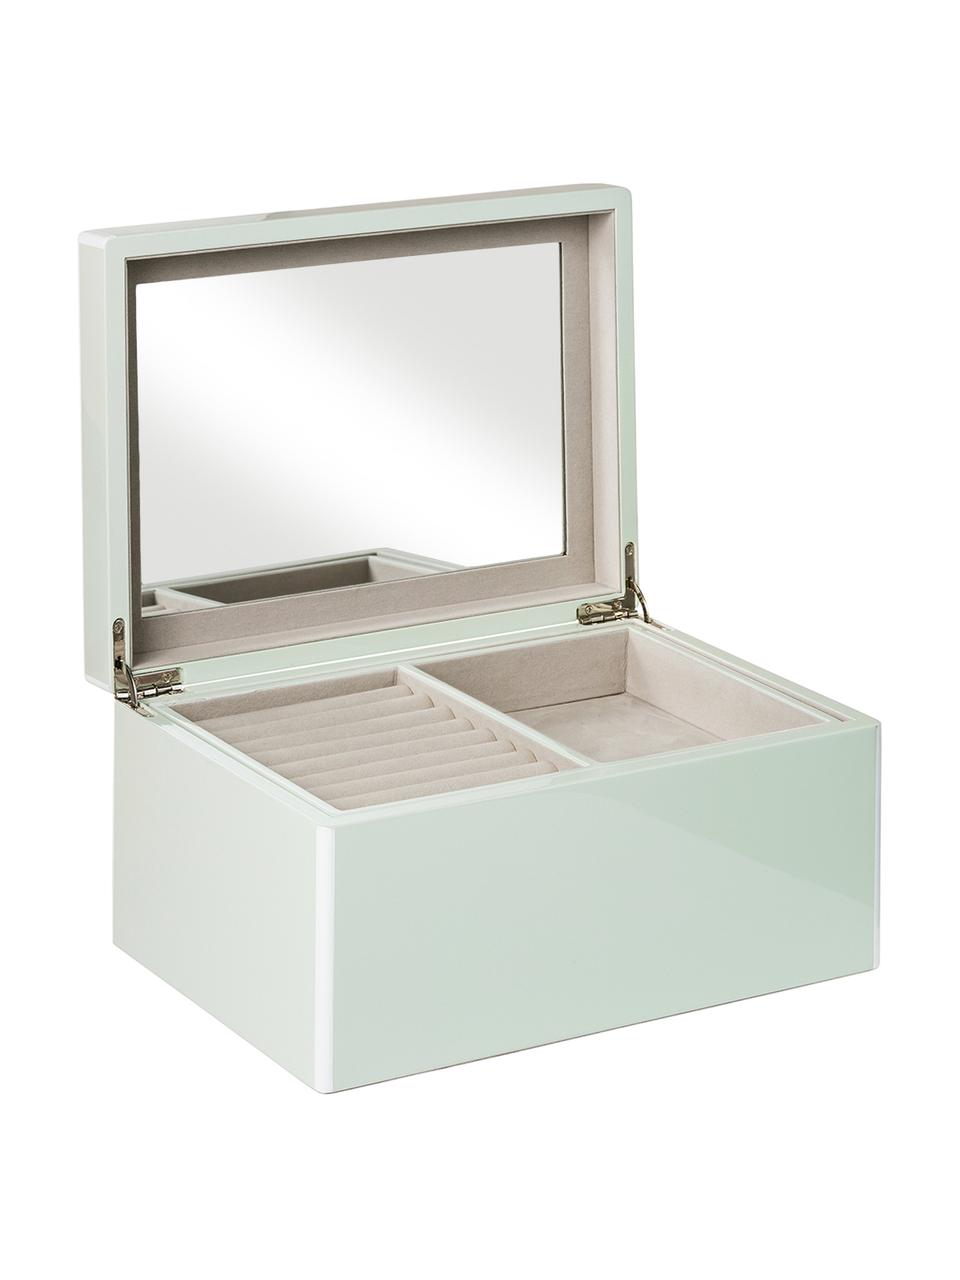 Schmuckbox Taylor mit Spiegel, Unterseite: Samt zur Schonung der Möb, Mint, 26 x 13 cm